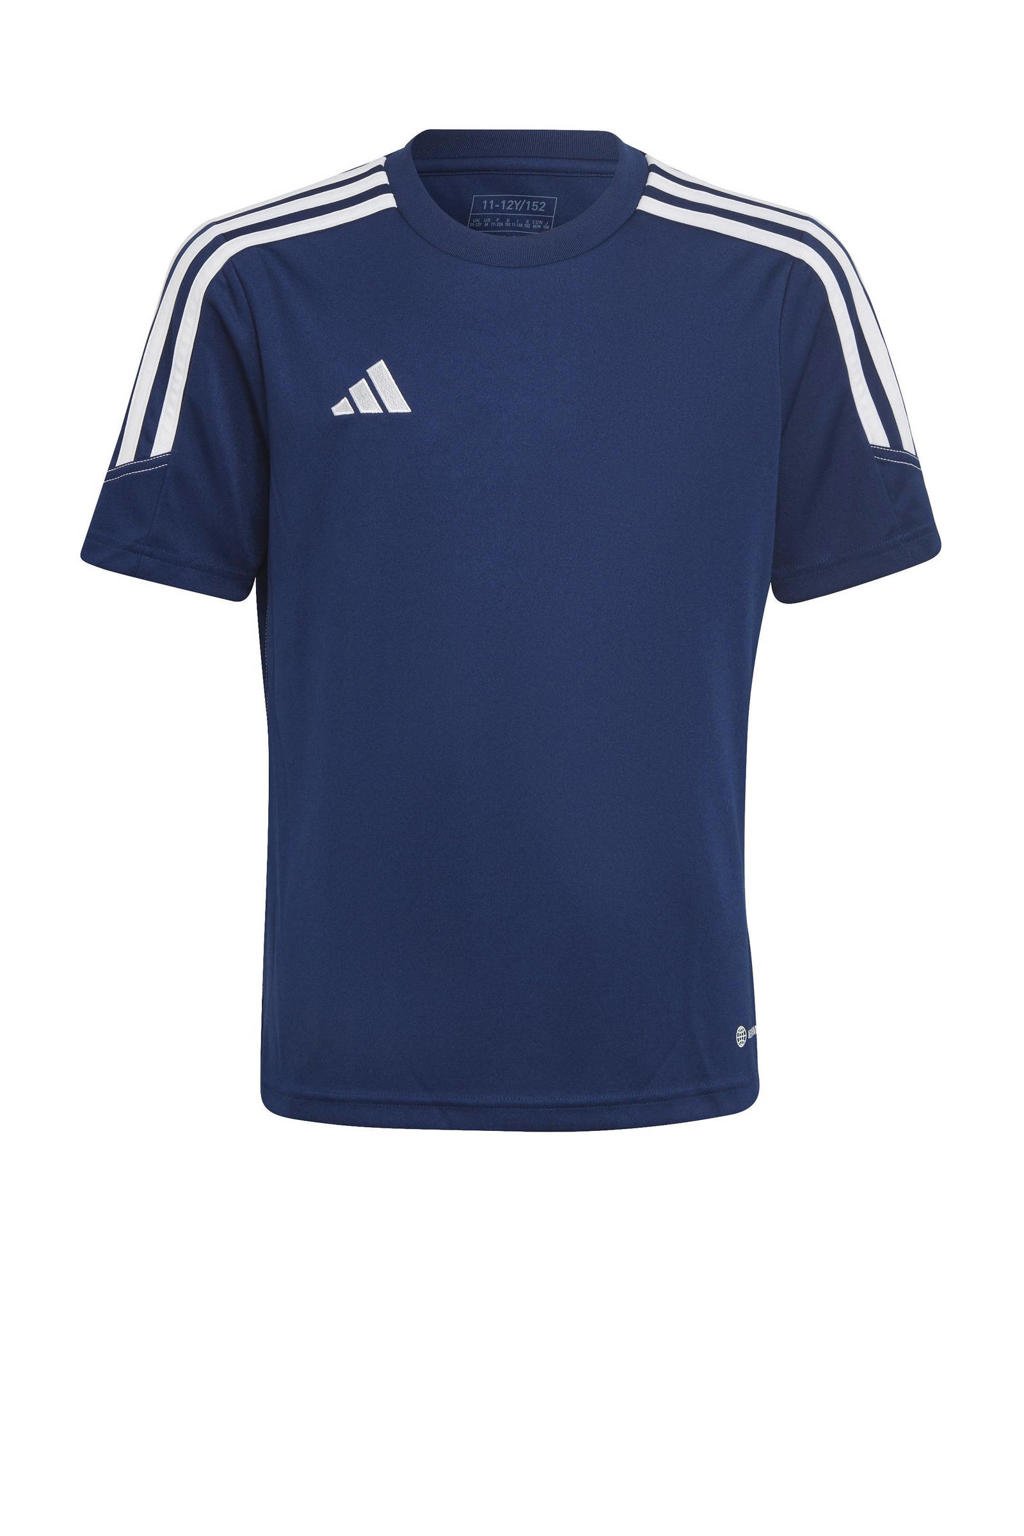 Blauw, donkerblauw en witte jongens en meisjes adidas Performance sport T-shirt Tiro van polyester met korte mouwen en ronde hals